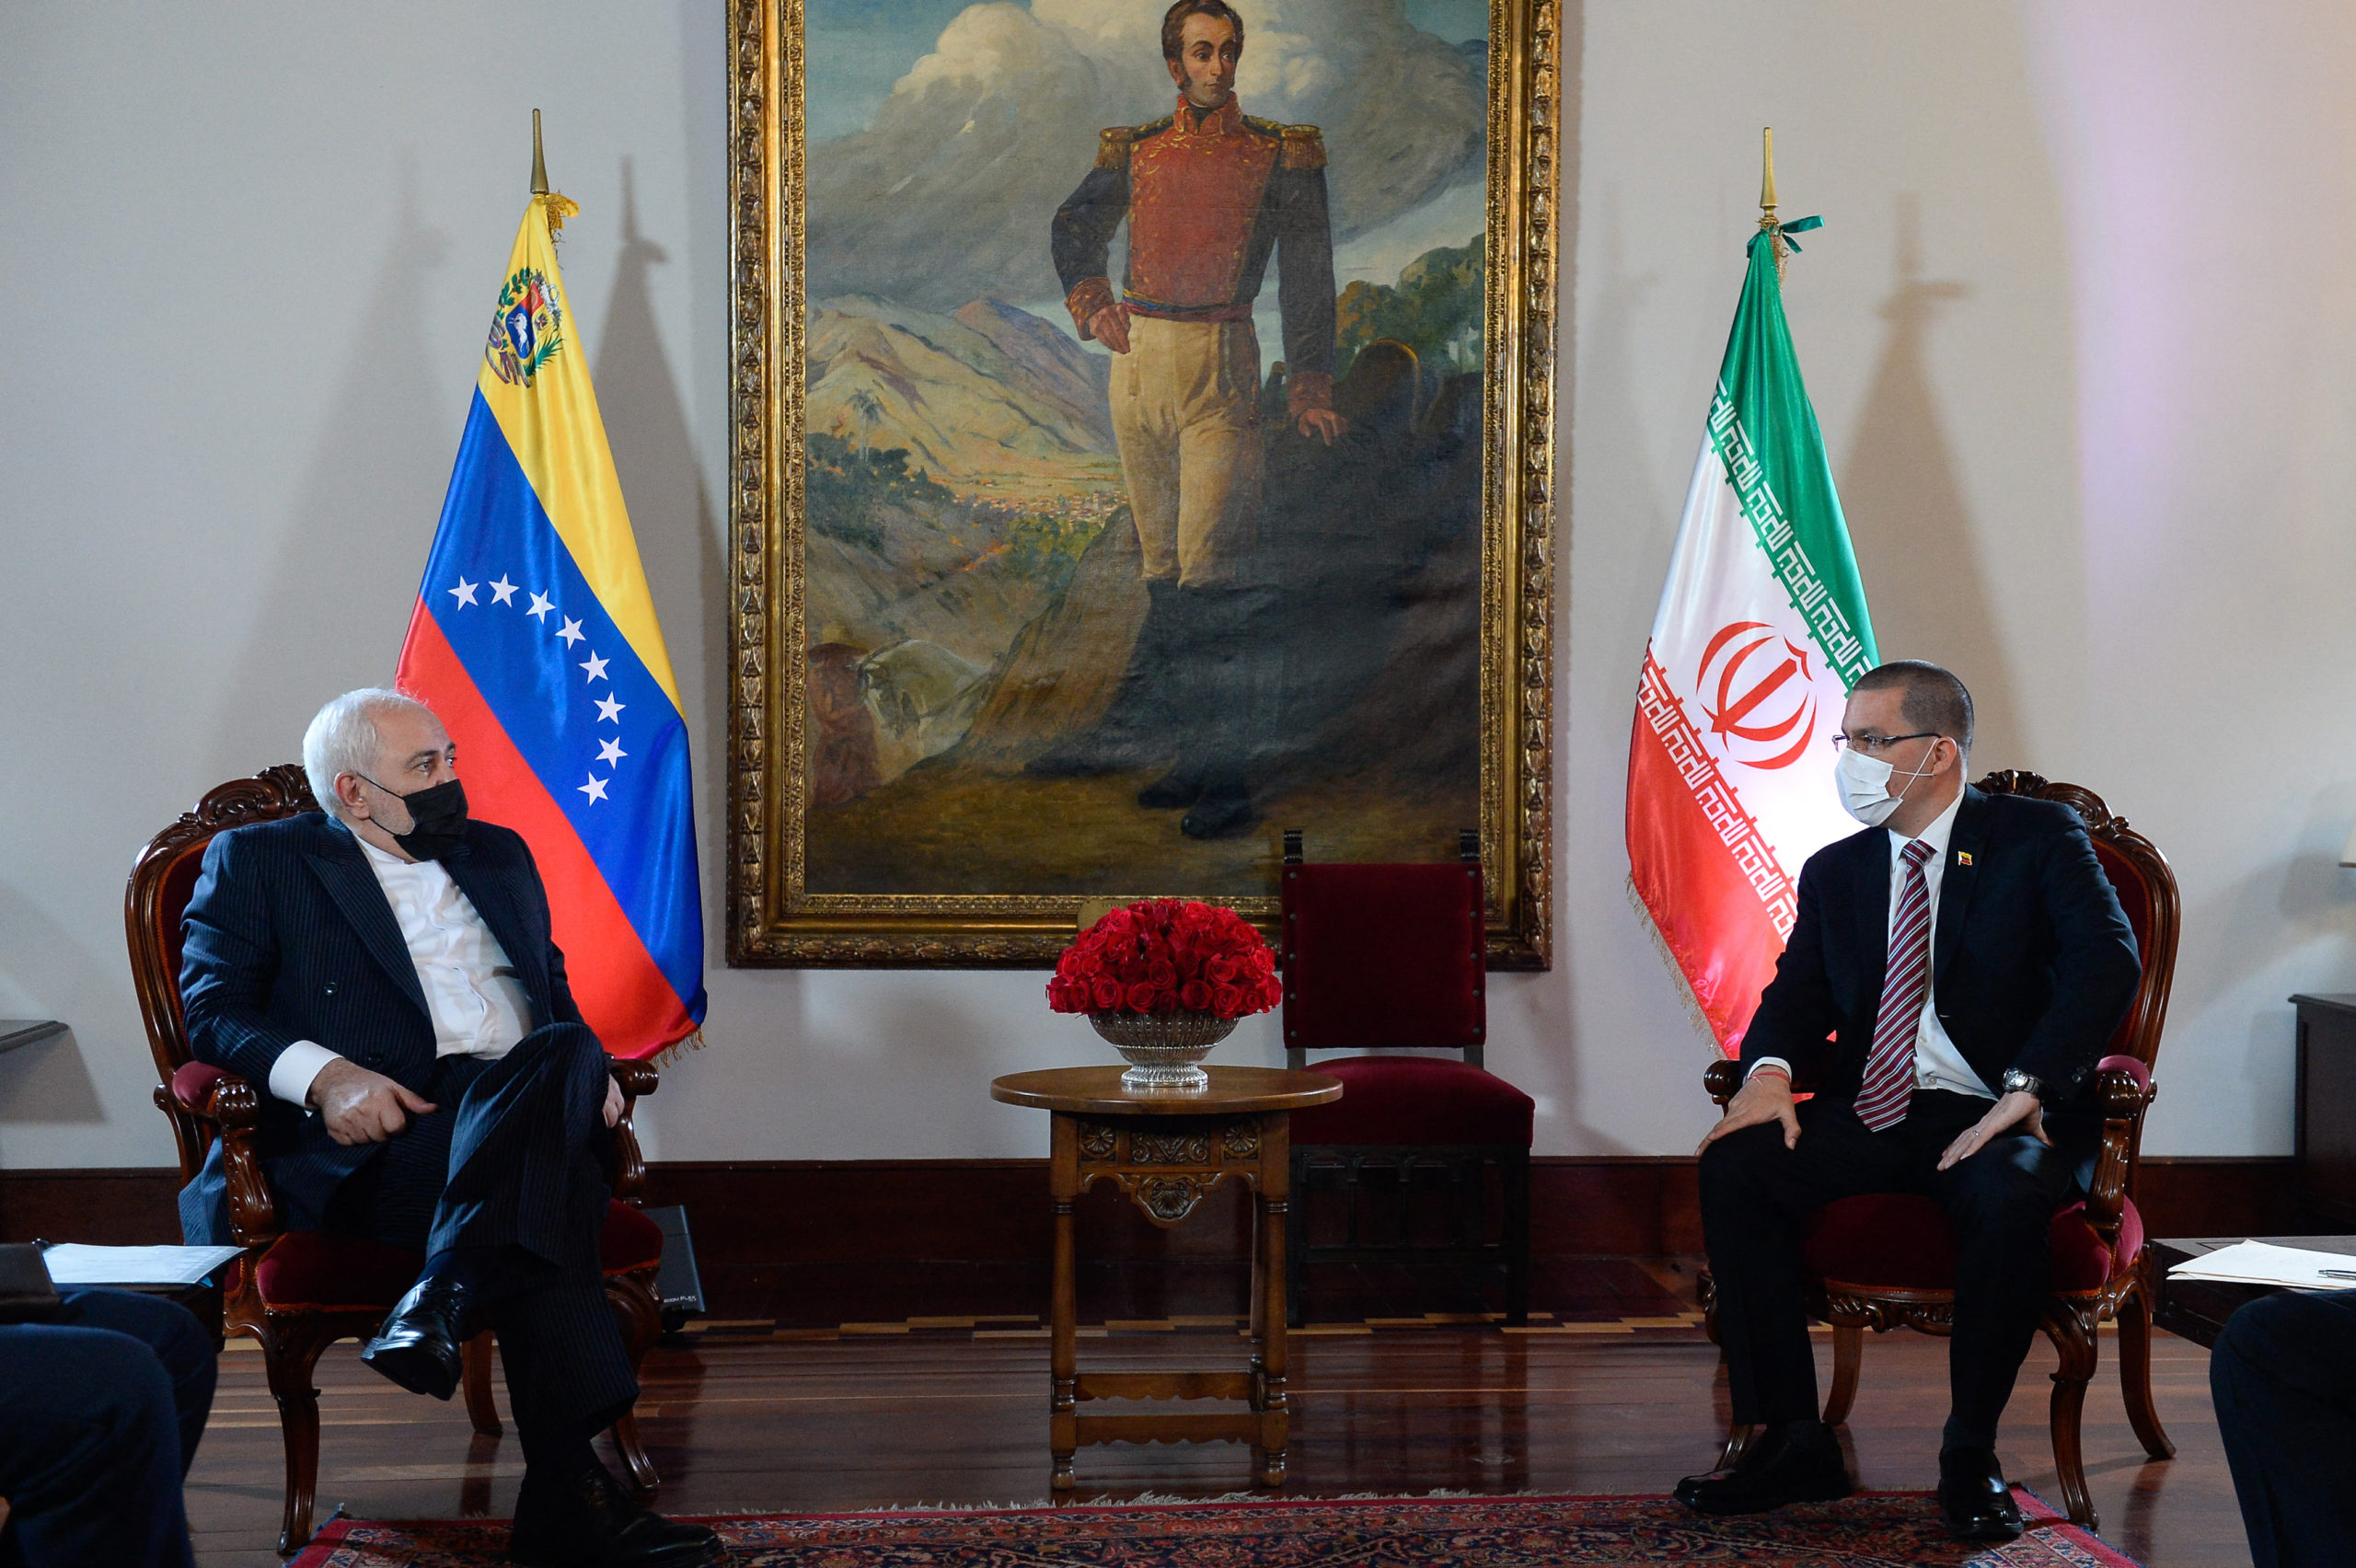 Irán amplía presencia en Latinoamérica en alianza con el crimen organizado